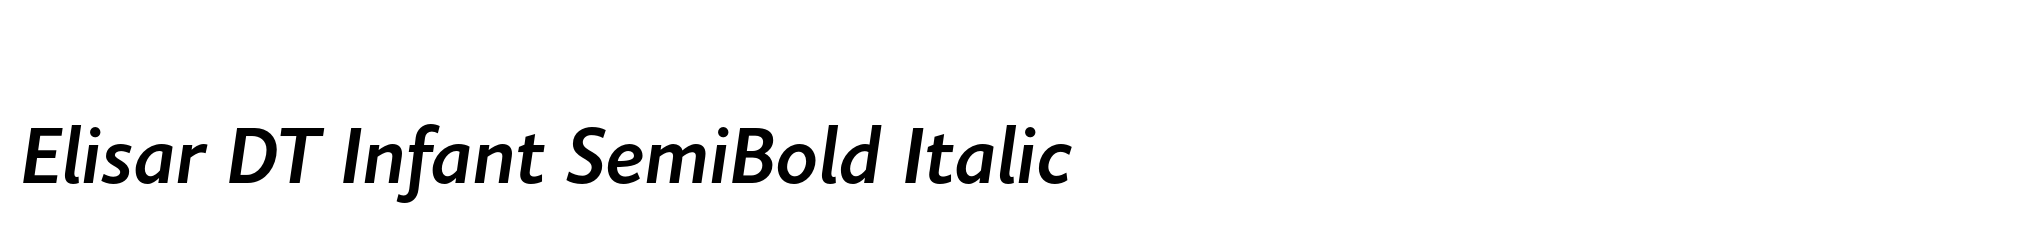 Elisar DT Infant SemiBold Italic image